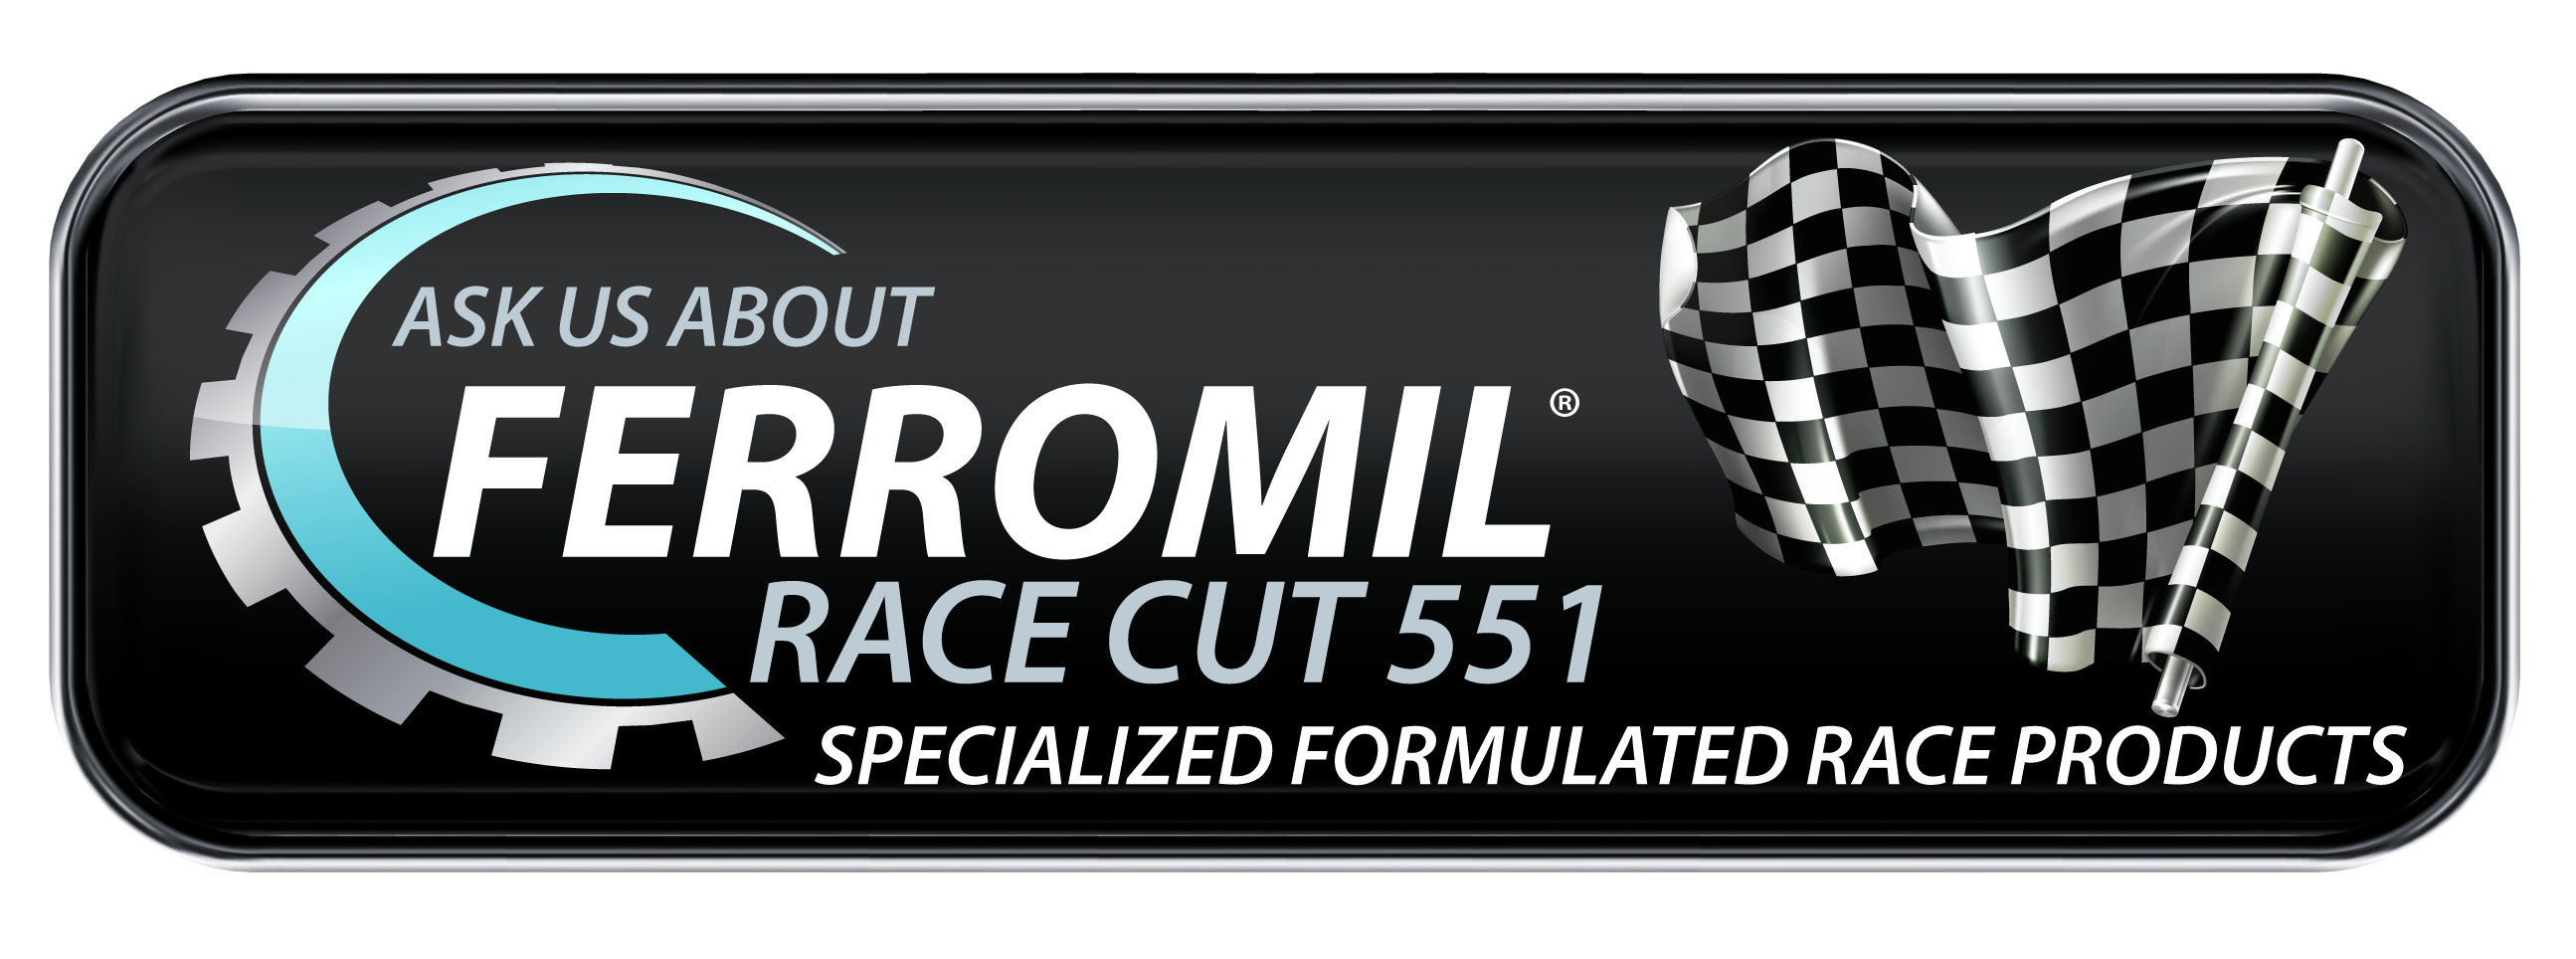 Ferromil-Race-Cut-551